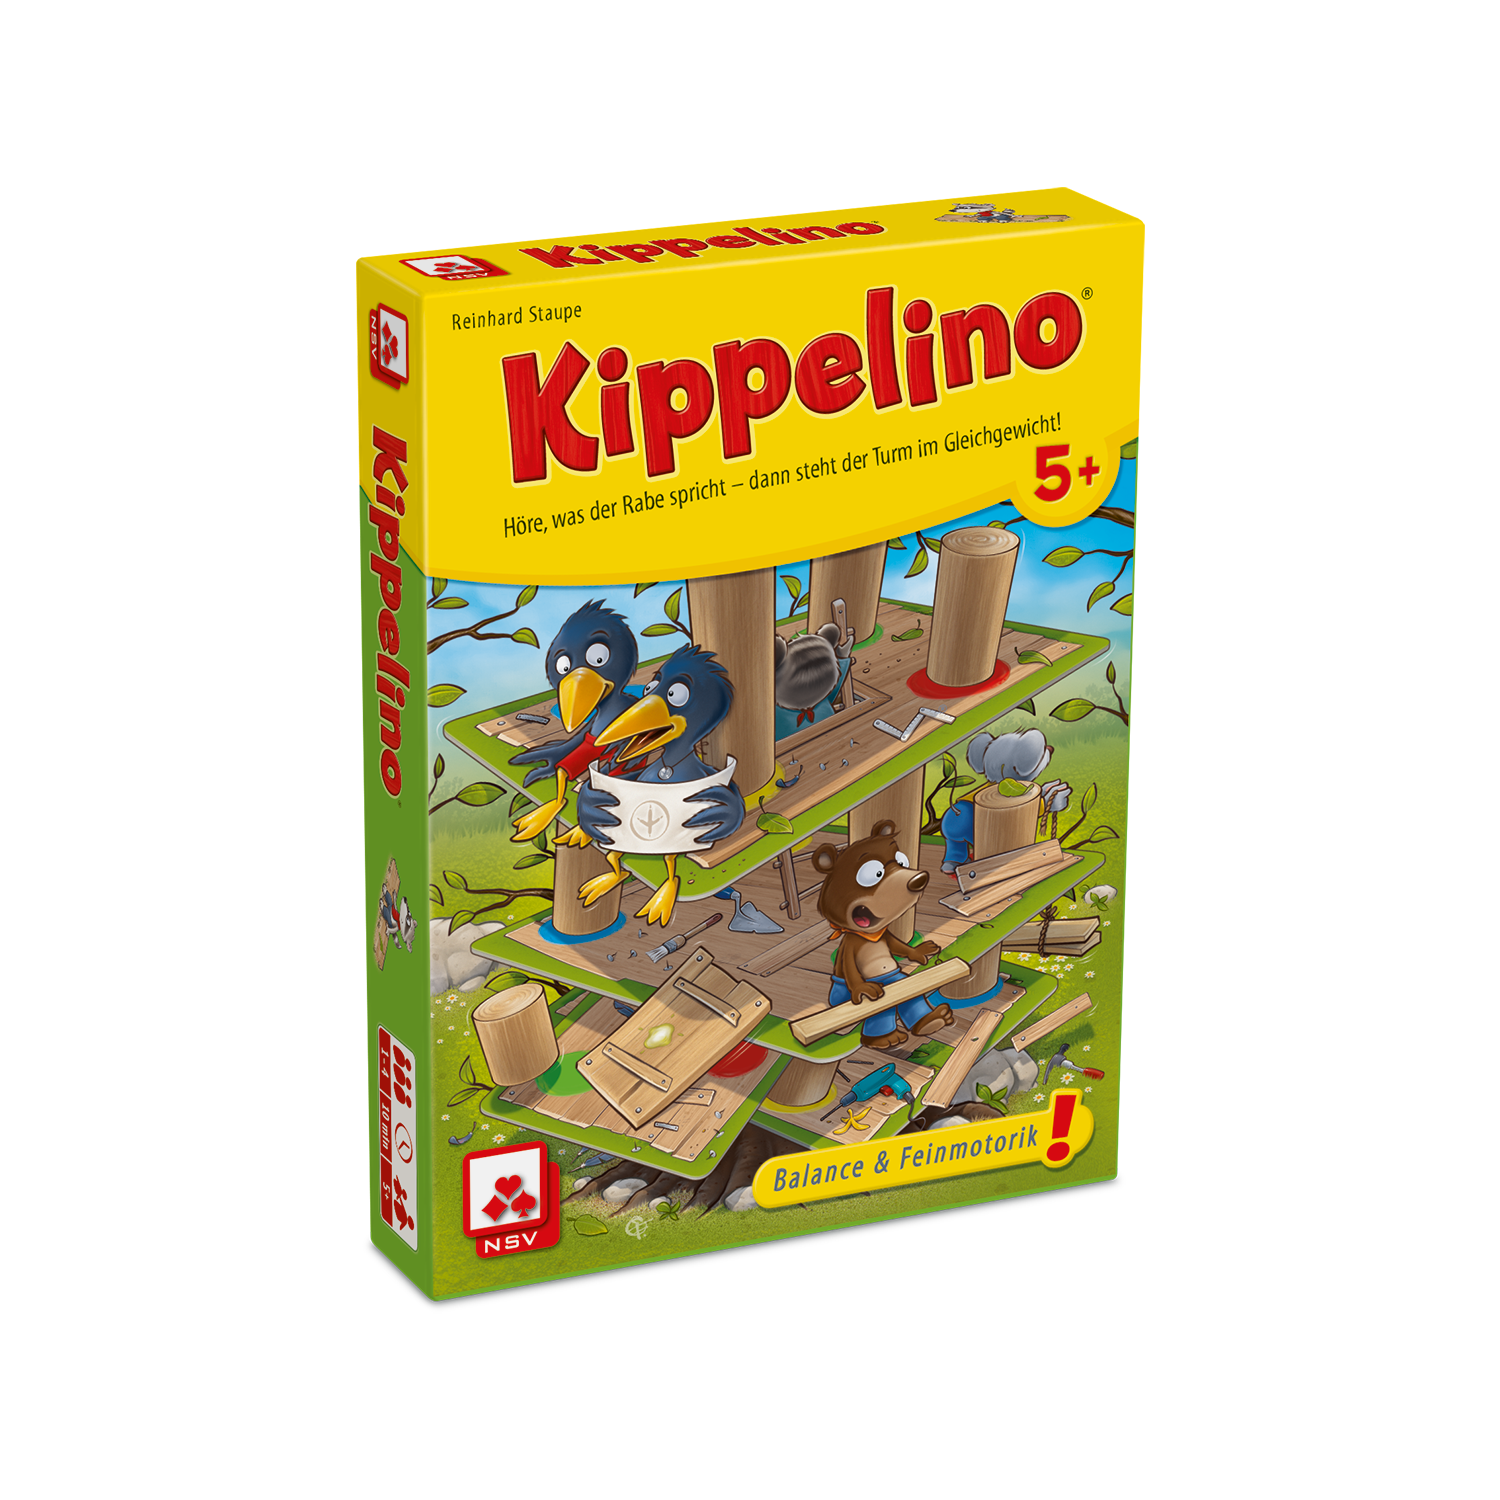 Kippelino, ein Kinderspiel von Reinhard Staupe